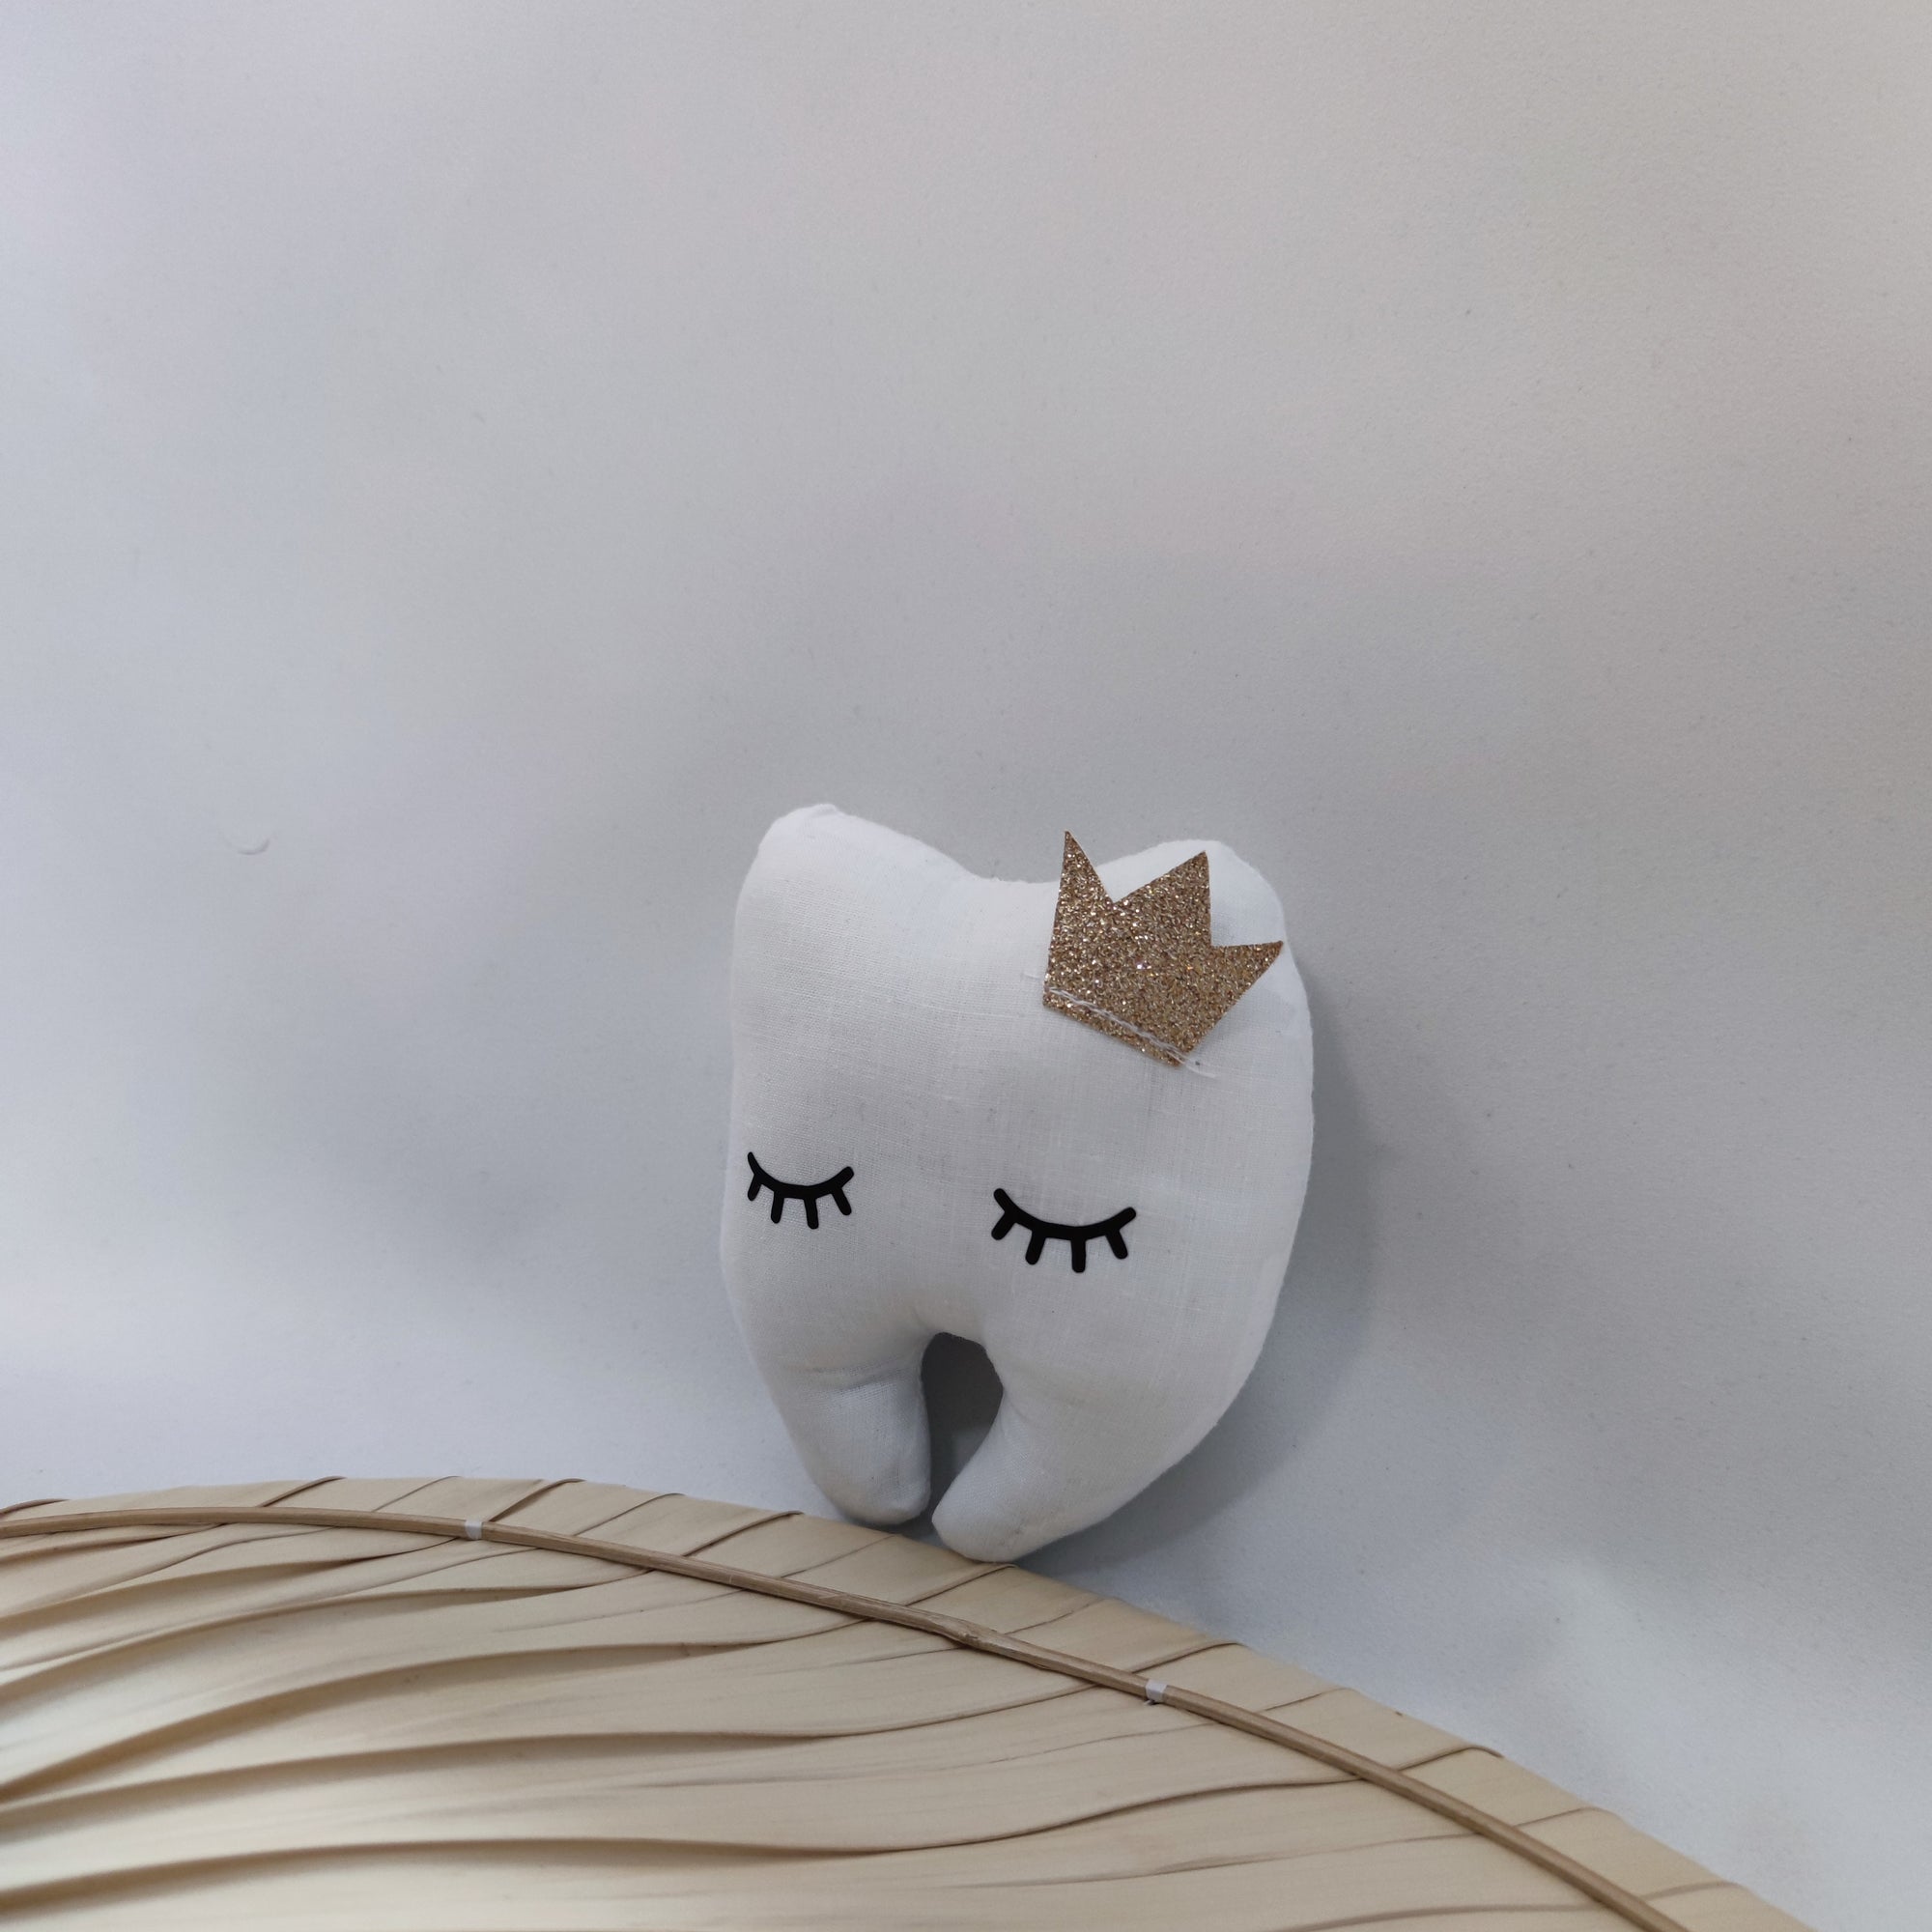 Velvet Moustache - La tite Dent est de retour! Un mini coussin à pochette  secrète pour y glisser les dents de lait sous l'oreiller. 🧚🏻 Bonne  rentrée à toutes les petites et